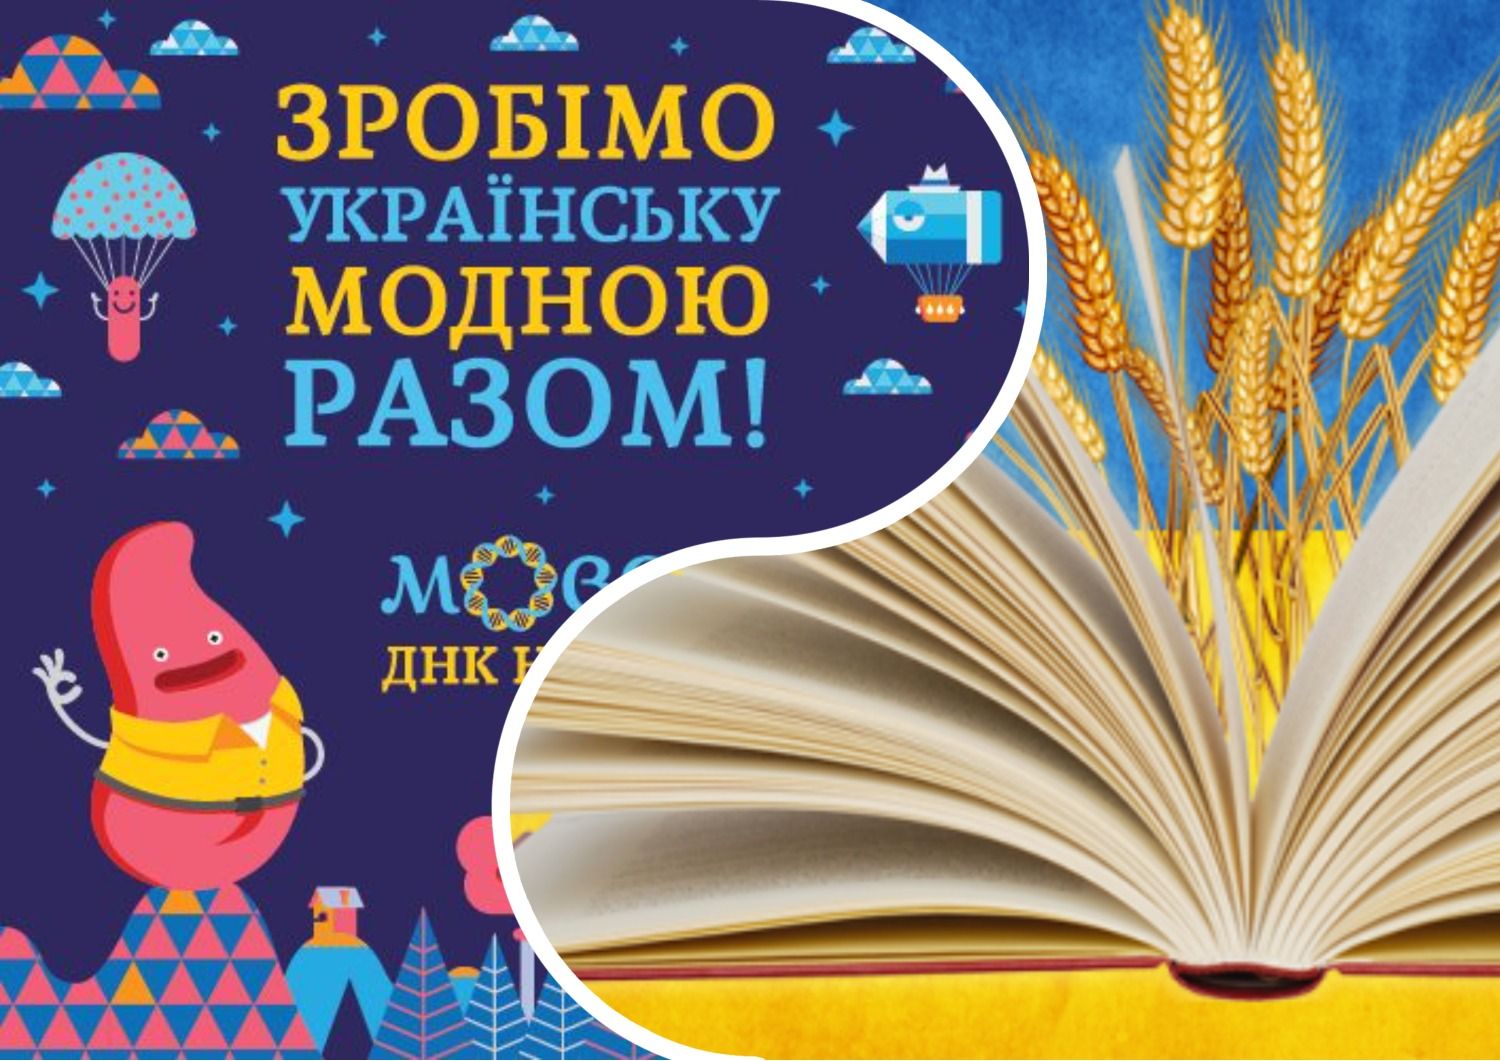 Антисуржик - як сказати правильно українською мовою і забути про суржик - 24 канал - Освіта